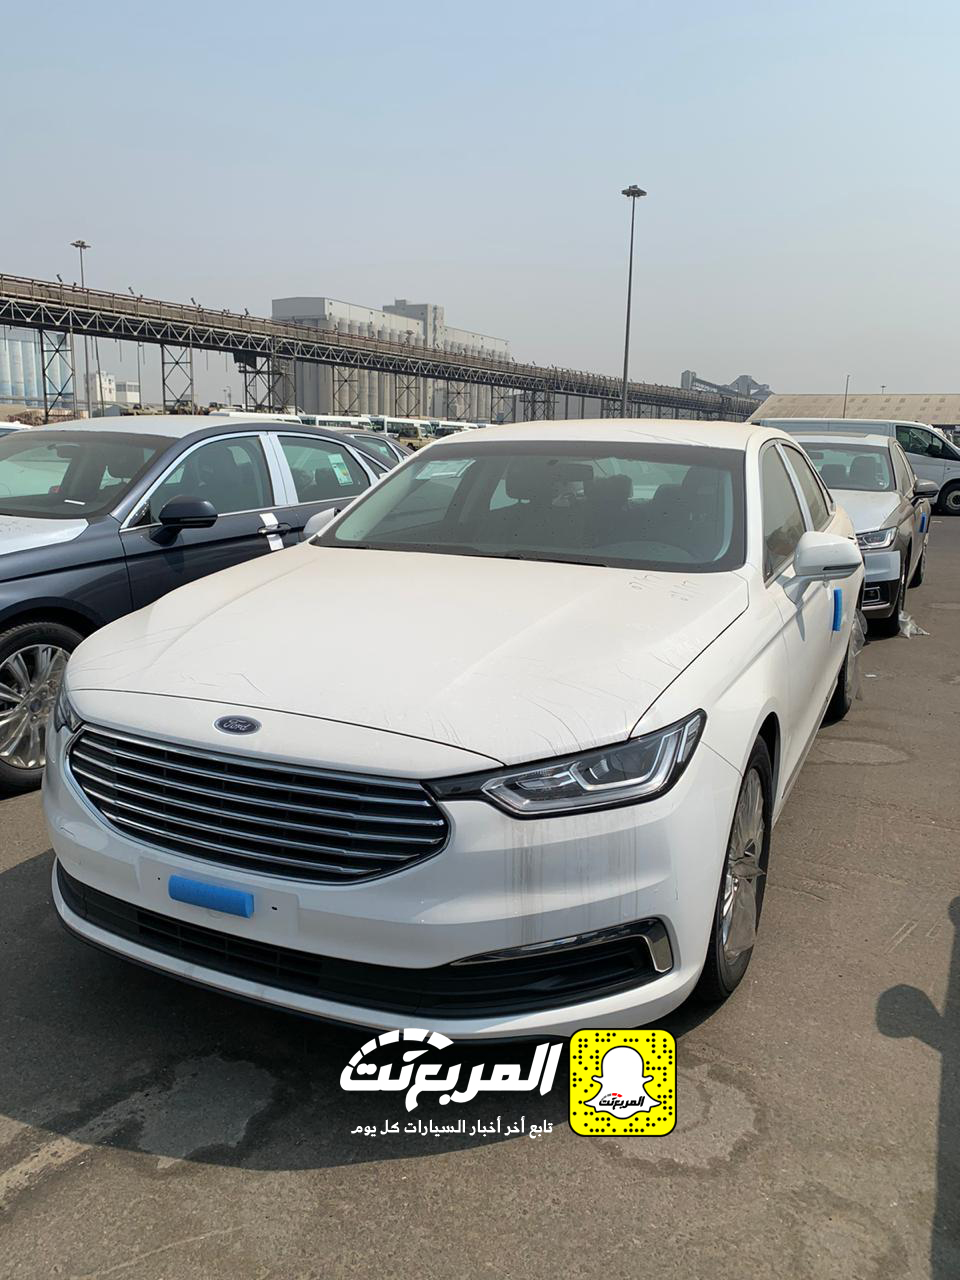 “بالصور” وصول فورد توروس 2020 الجديدة كلياً الى السعودية + التفاصيل Ford Taurus